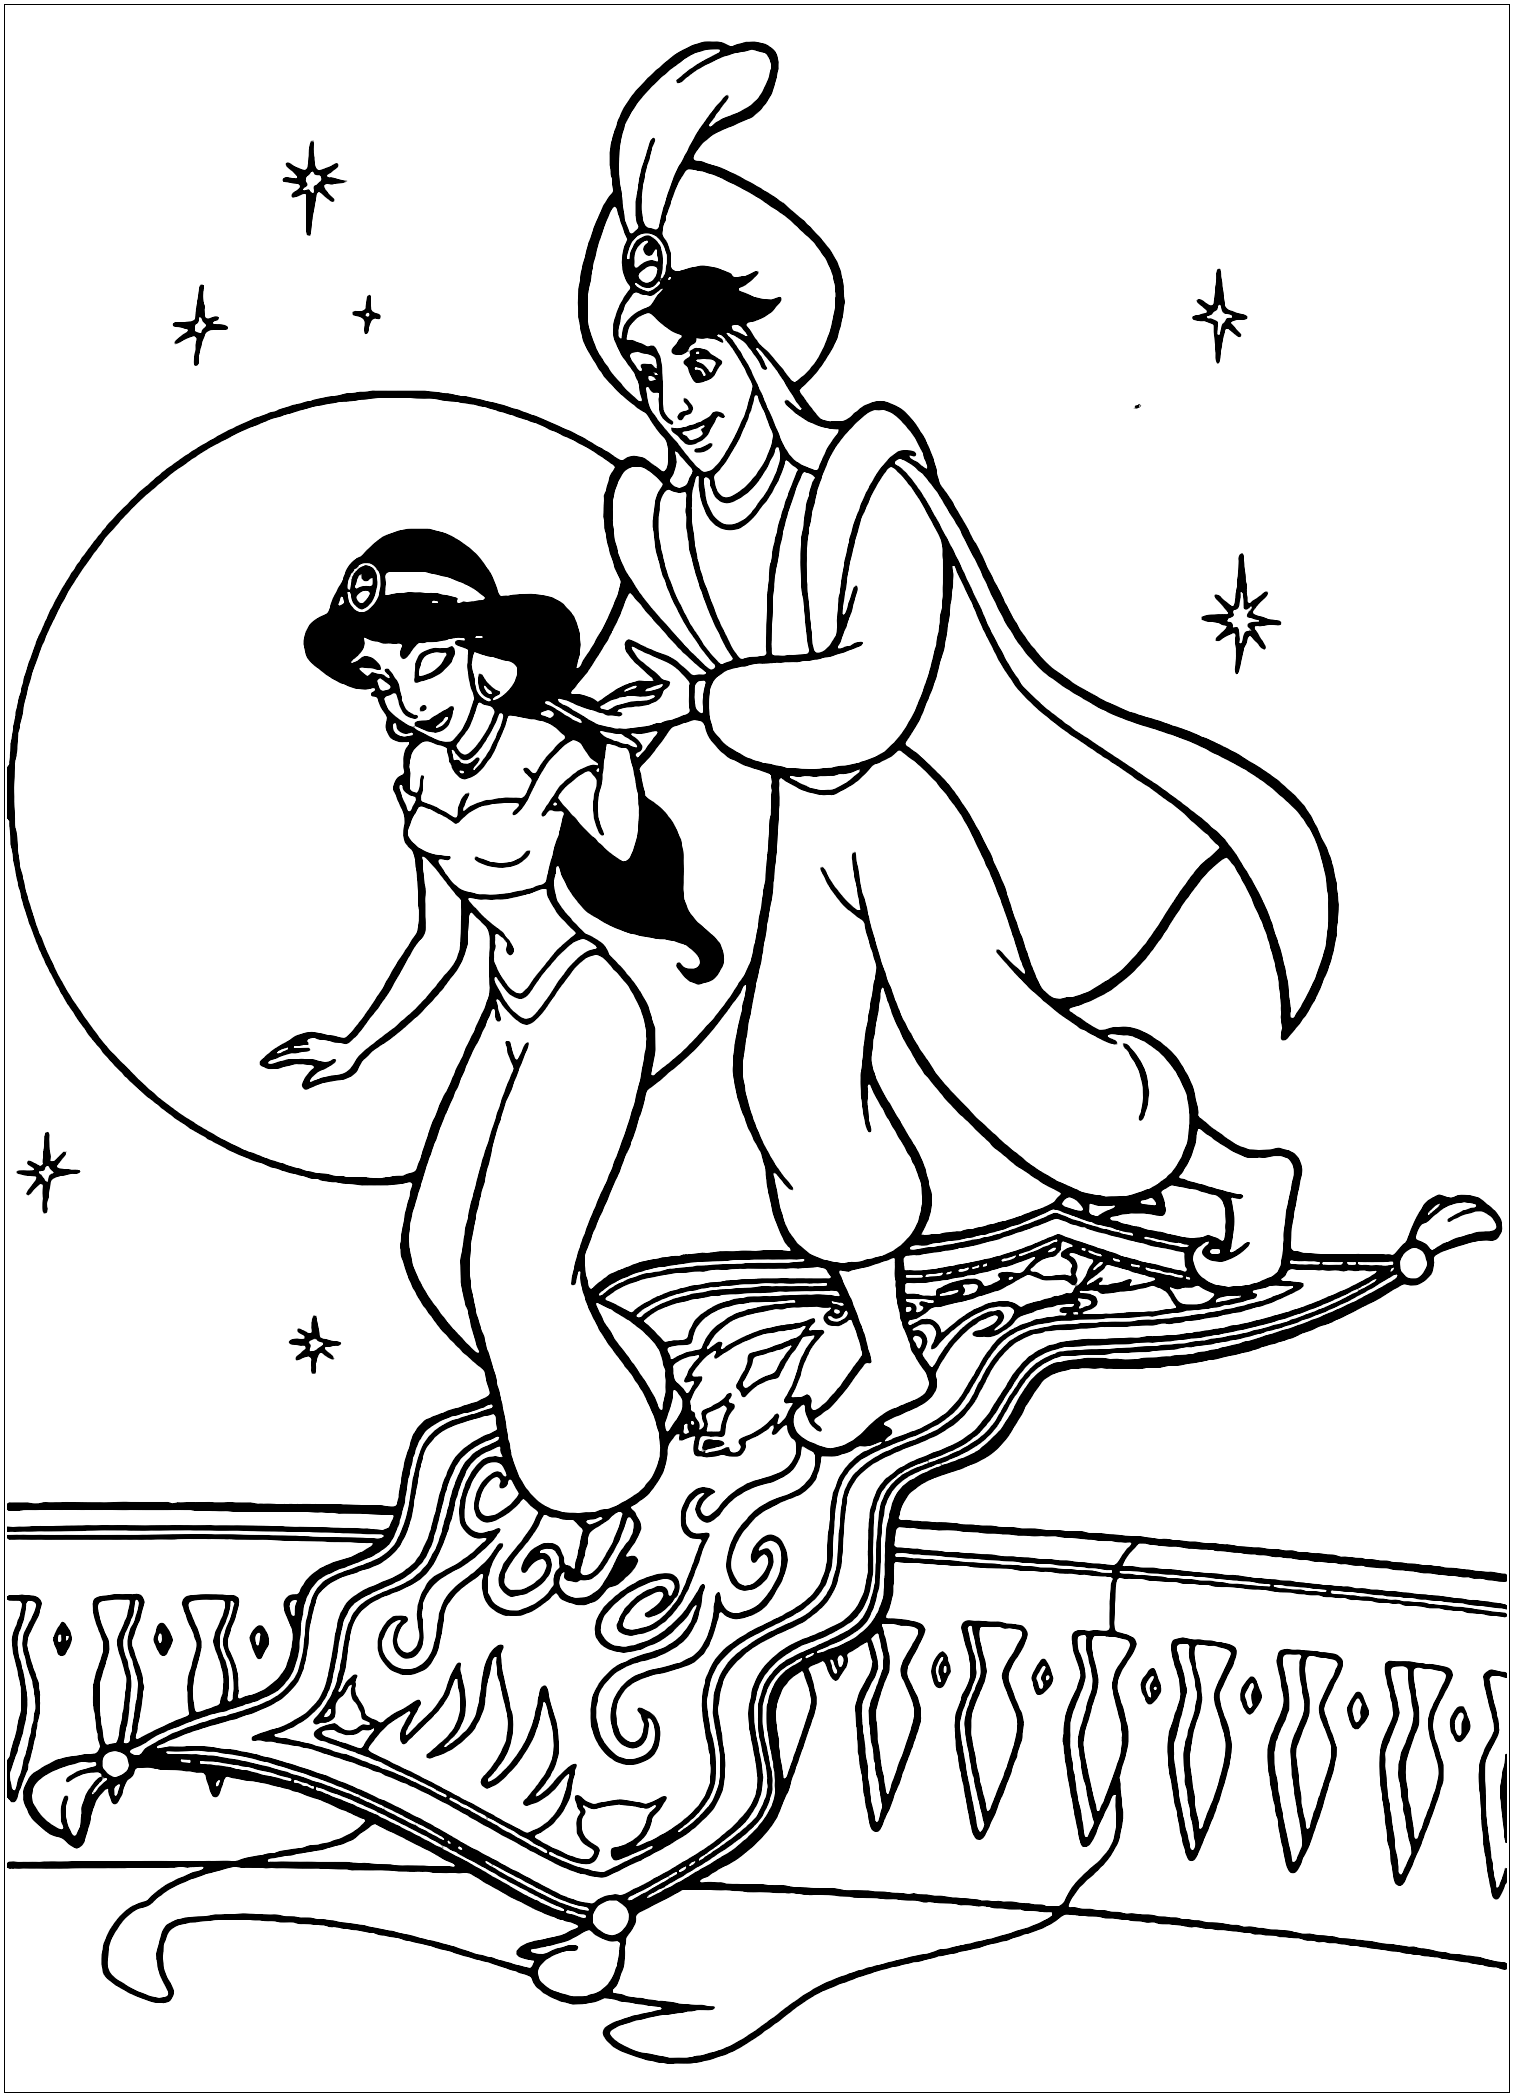 Aladino y Jasmine regresan de su viaje en una alfombra mágica